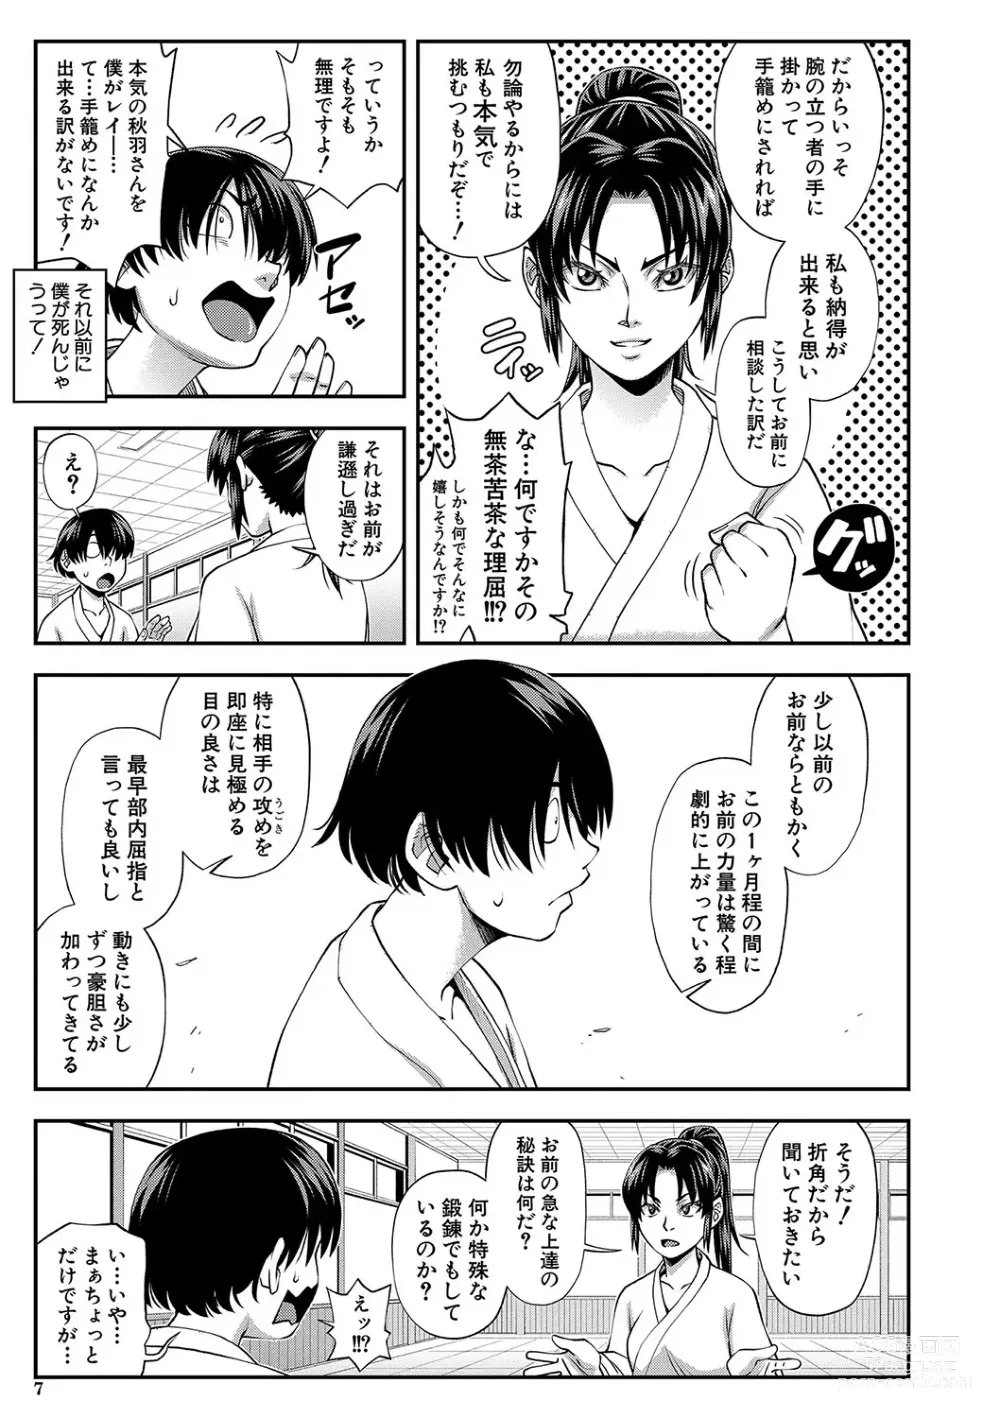 Page 8 of manga Yareba Yaru Hodo Suki ni Naru